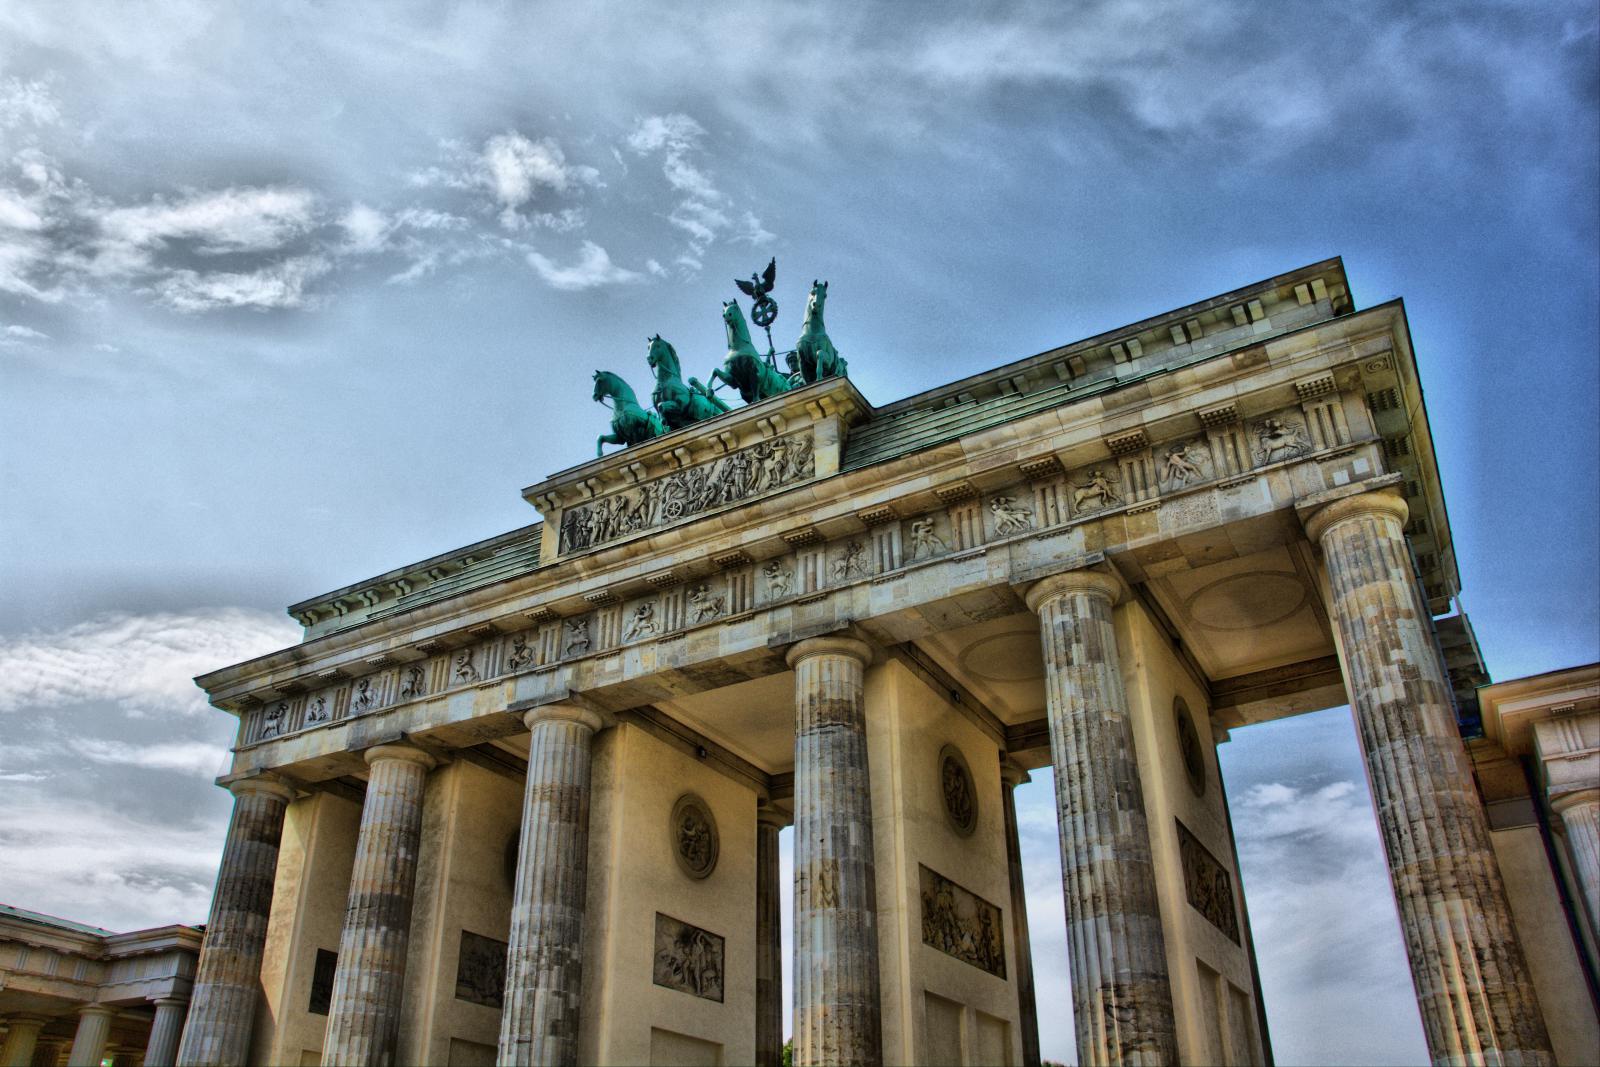 Бранденбургские ворота являются символом Германии. Долгие годы они служили символом разделённых Германии и Берлина, а после 1989 года стали воплощением воссоединения страны.